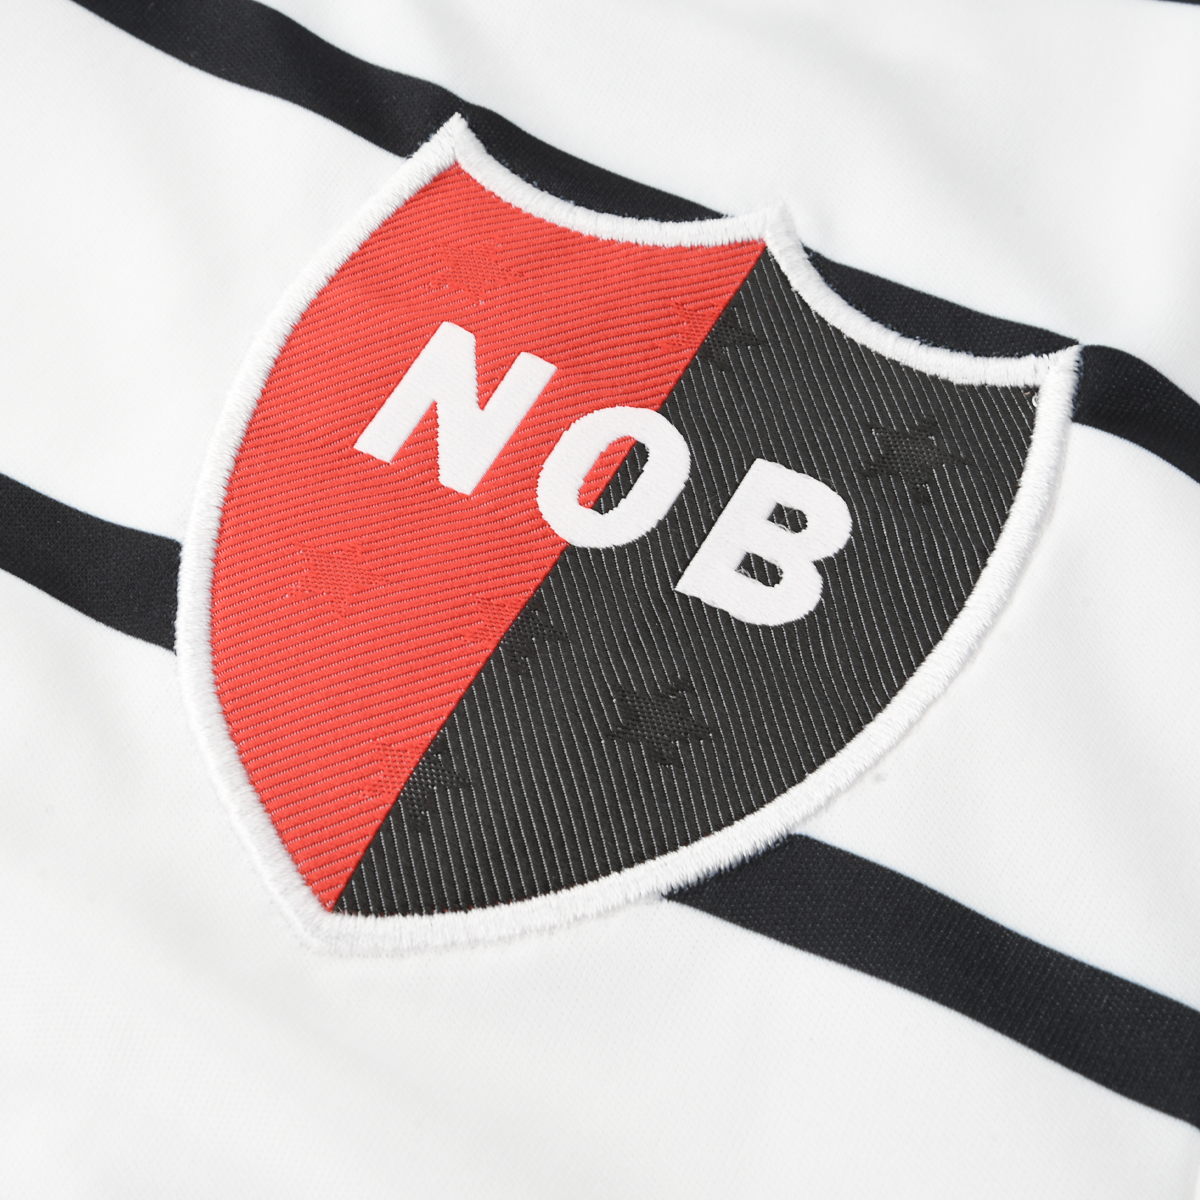 Camiseta Givova Newell's Old Boys Alternativa Niño,  image number null